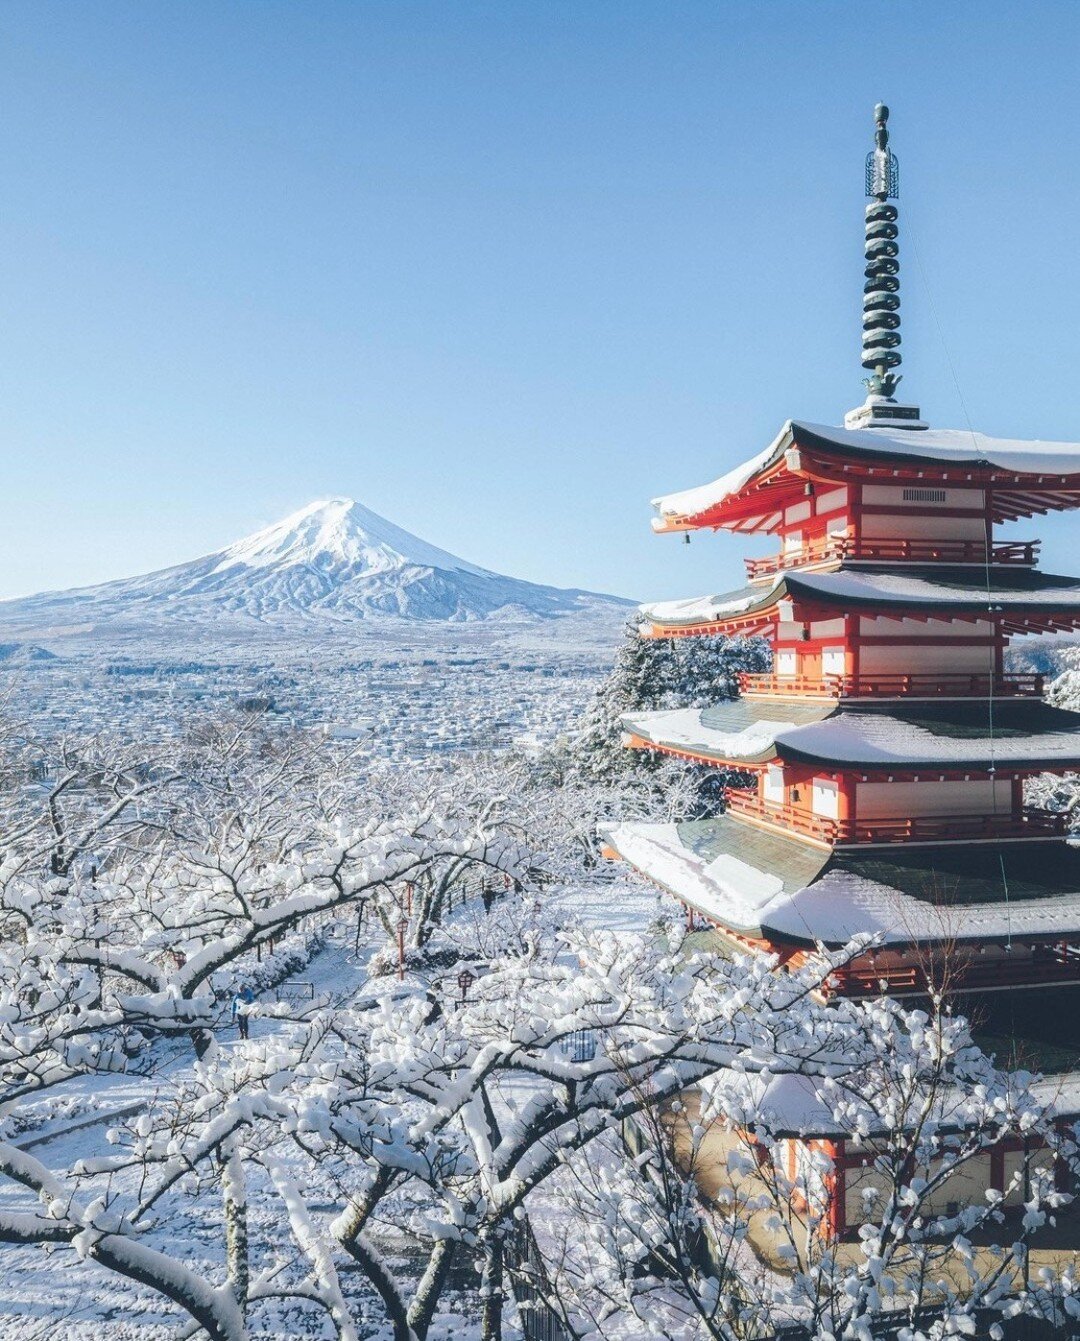 🗻 Sous la parure hivernale, le Mont Fuji raconte silencieusement son pass&eacute;, une silhouette solennelle qui traverse les &eacute;poques. ❄️

➡️ Retrouvez Breizh Caf&eacute; au Japon &agrave; Tokyo (Kagurazaka, Omotesando et Shinjuku), Kyoto, Yo